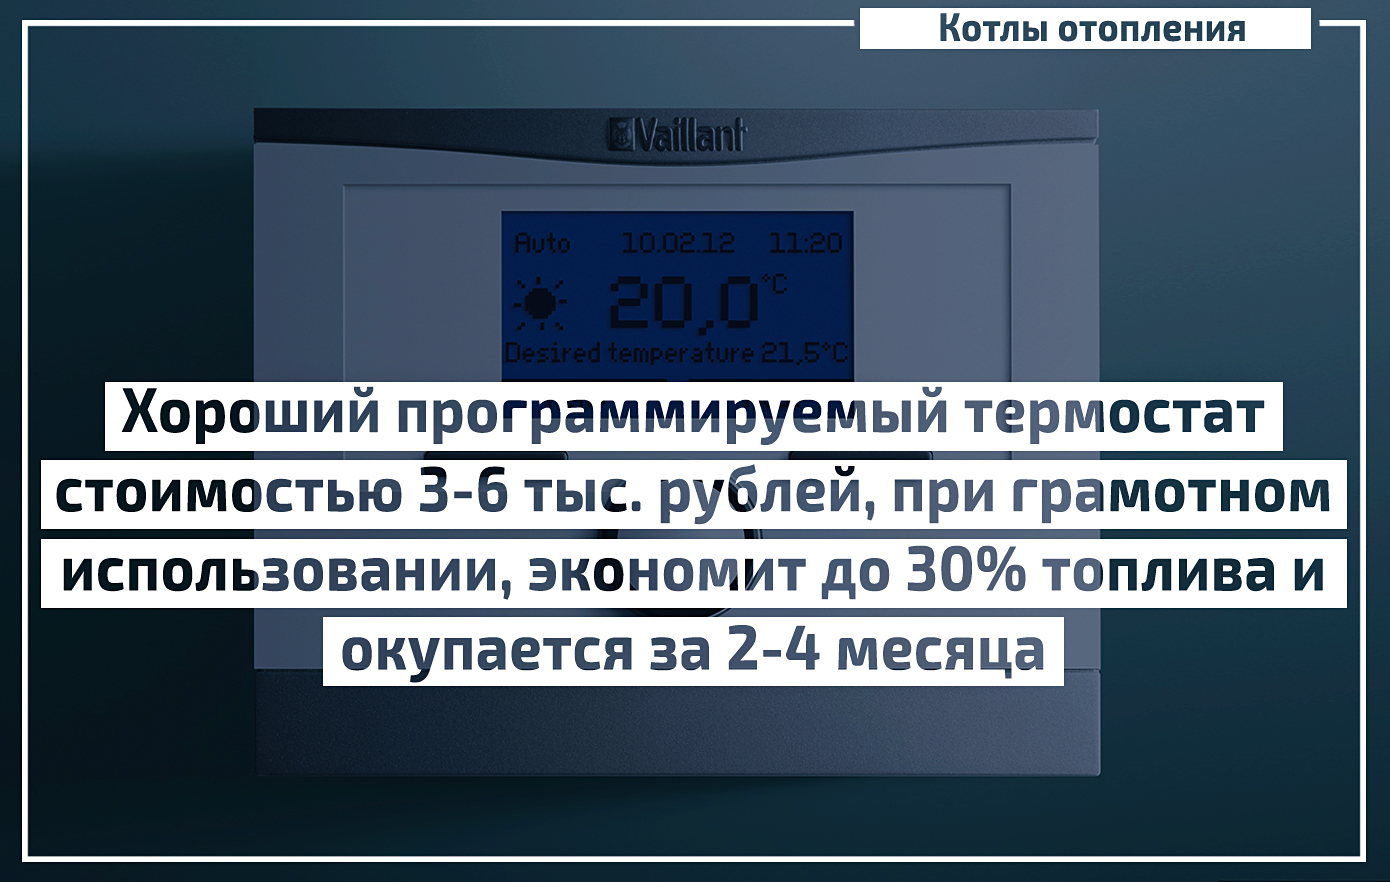 Умные термостаты в российских квартирах: как это работает, и какова реальная экономия?